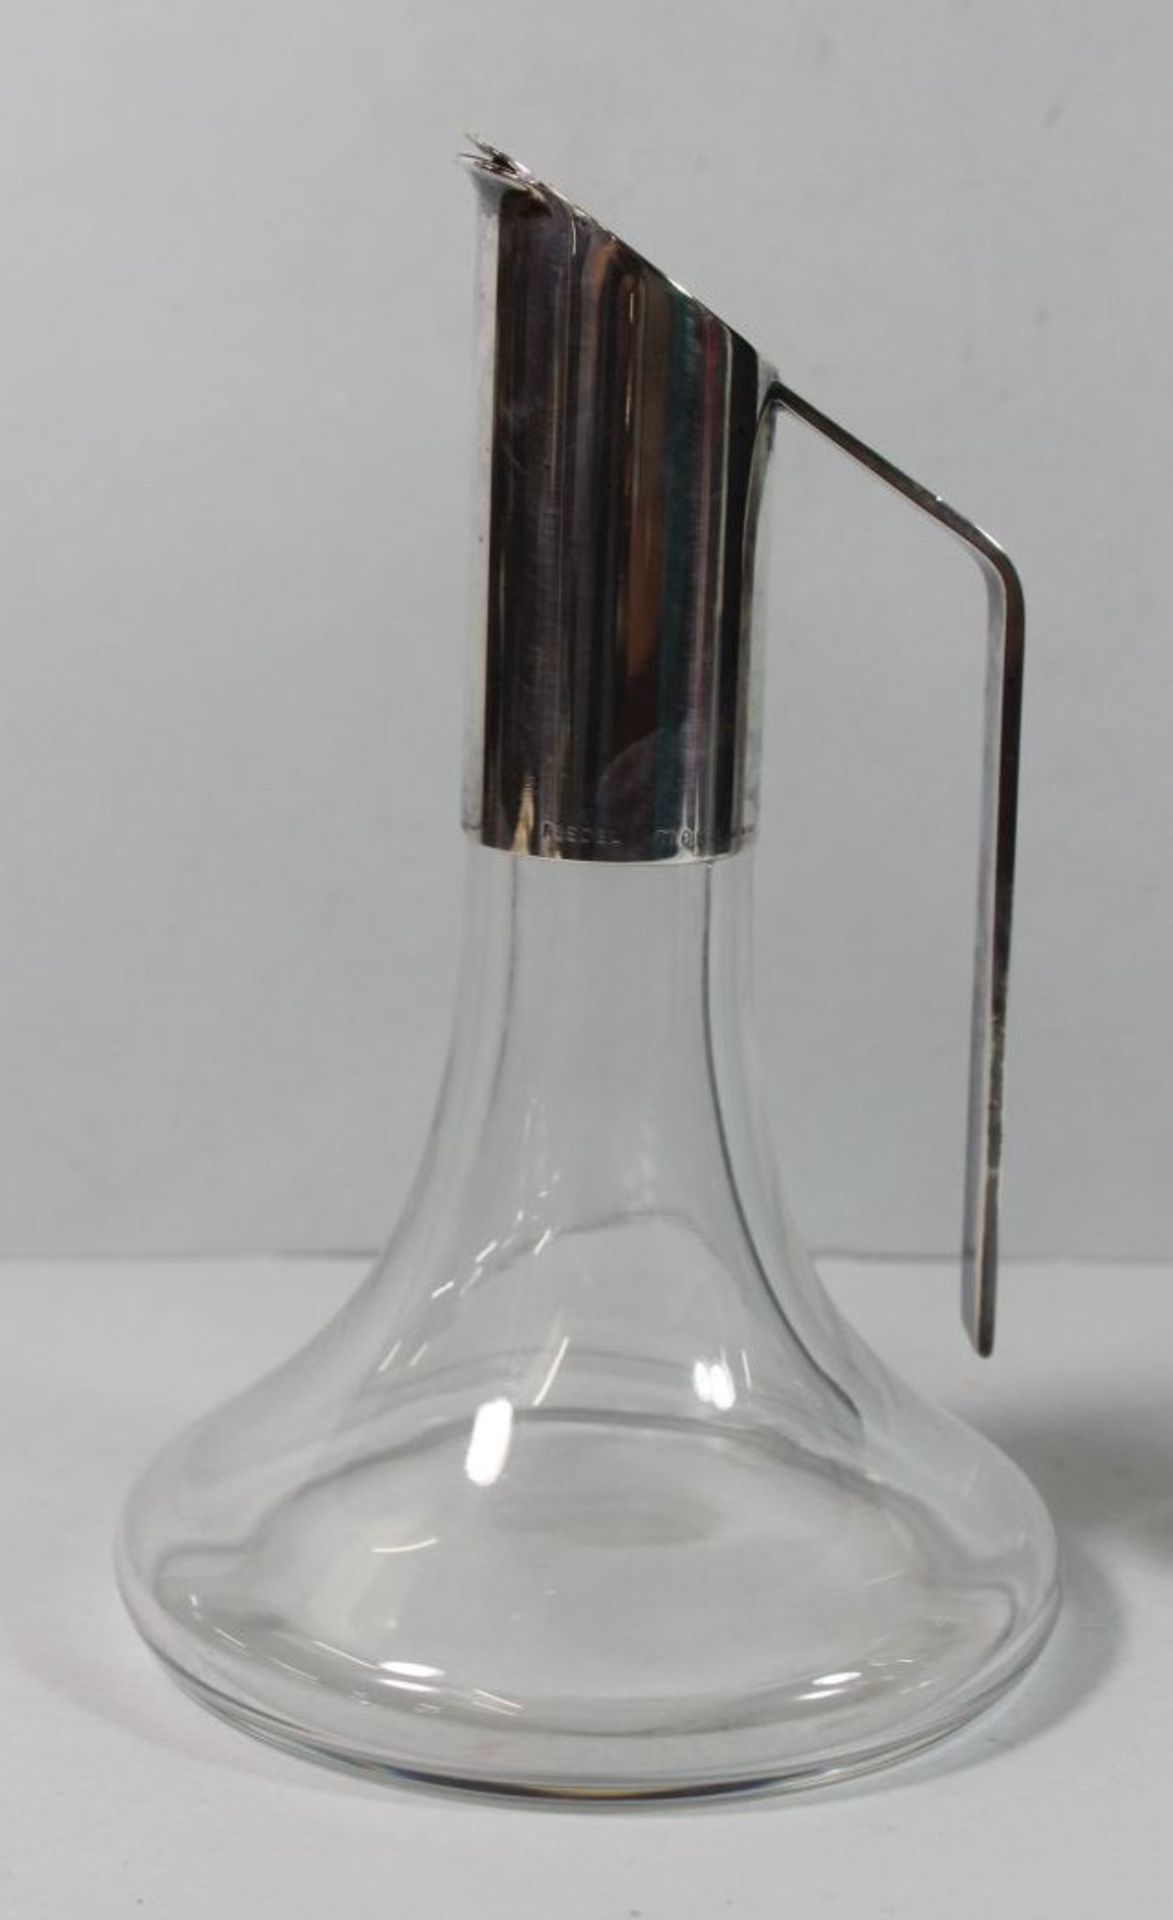 2 Schenkkannen, farbloses Glas mit Metallmontage, sign. Riedel Mesa, Italy, je ca. H-21cm. - Bild 3 aus 3